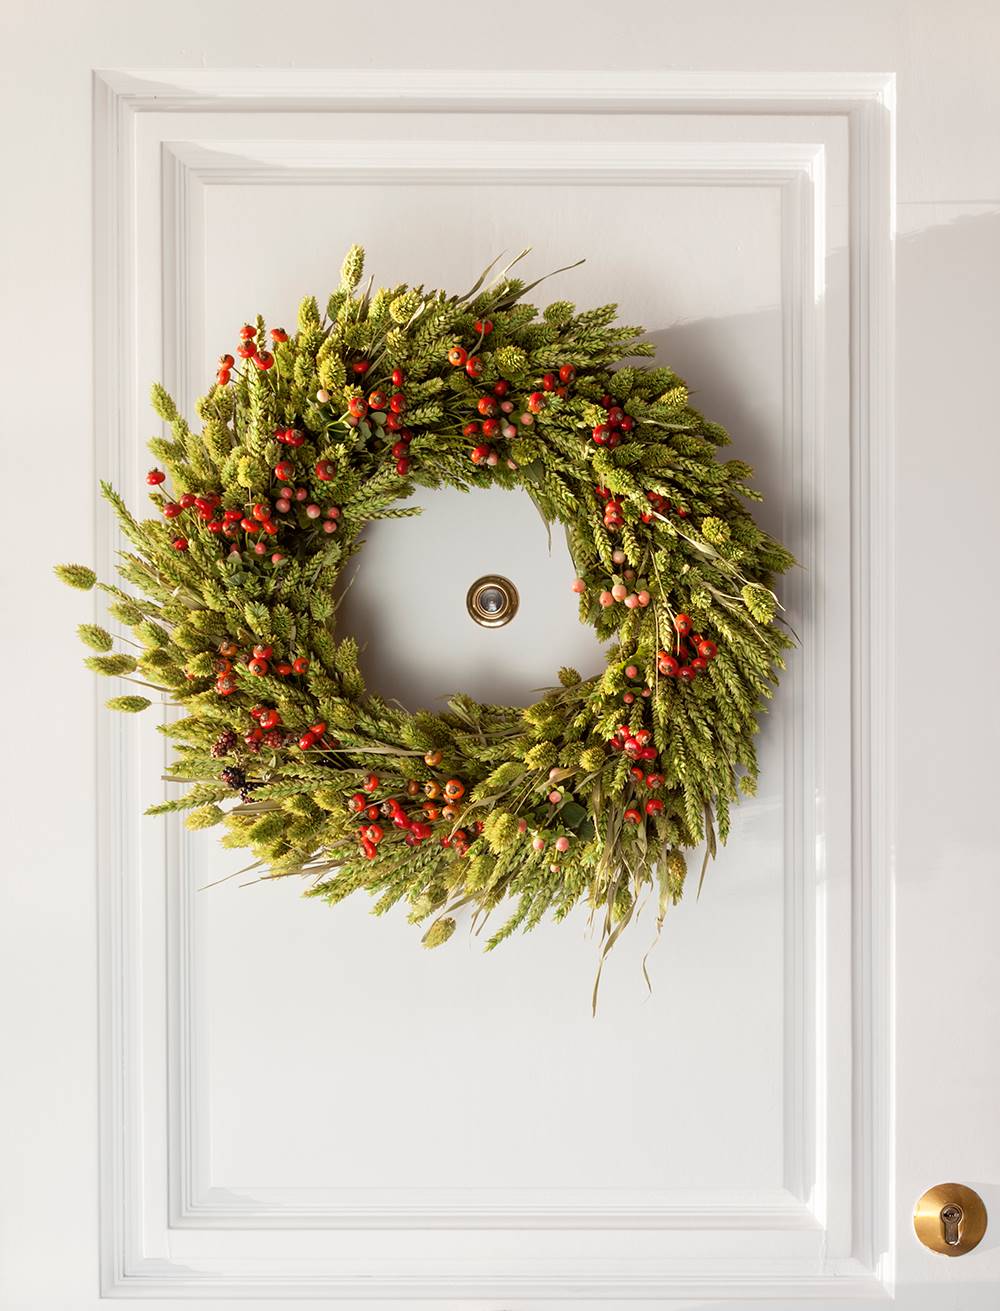 Corona vegetal navideña en la puerta.